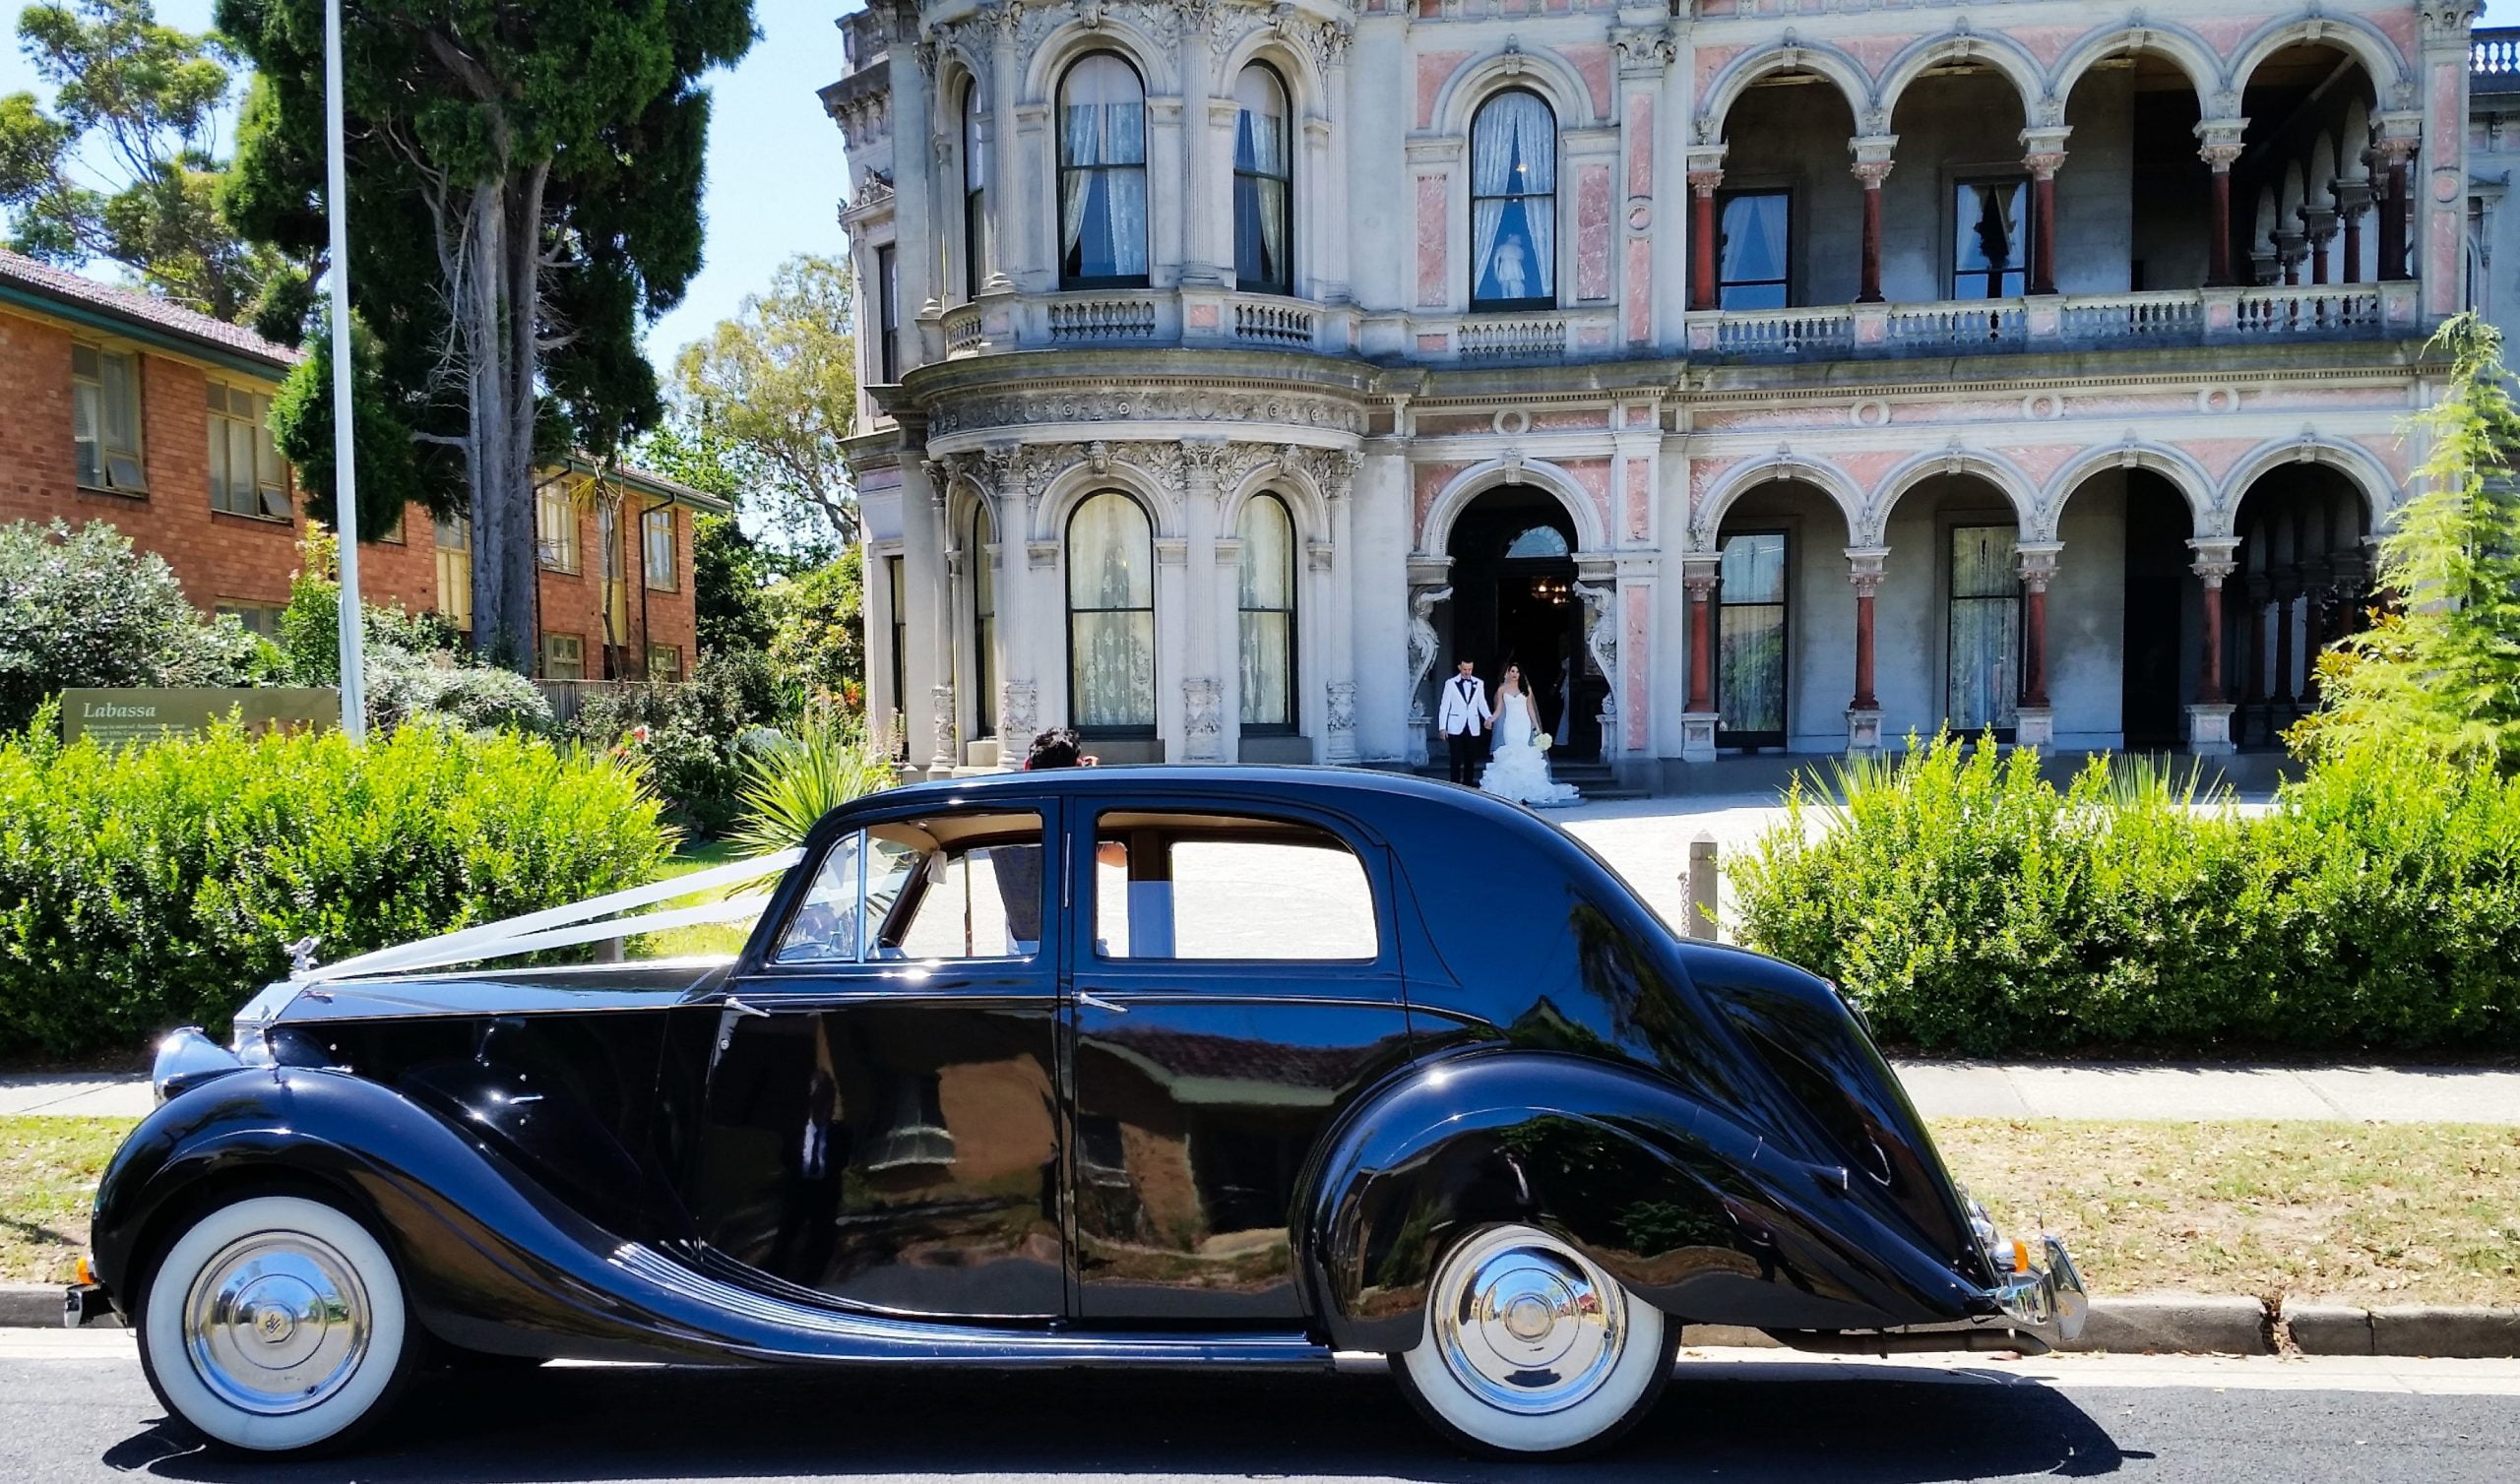 1947 Rolls Royce Wraith at Labassa 1